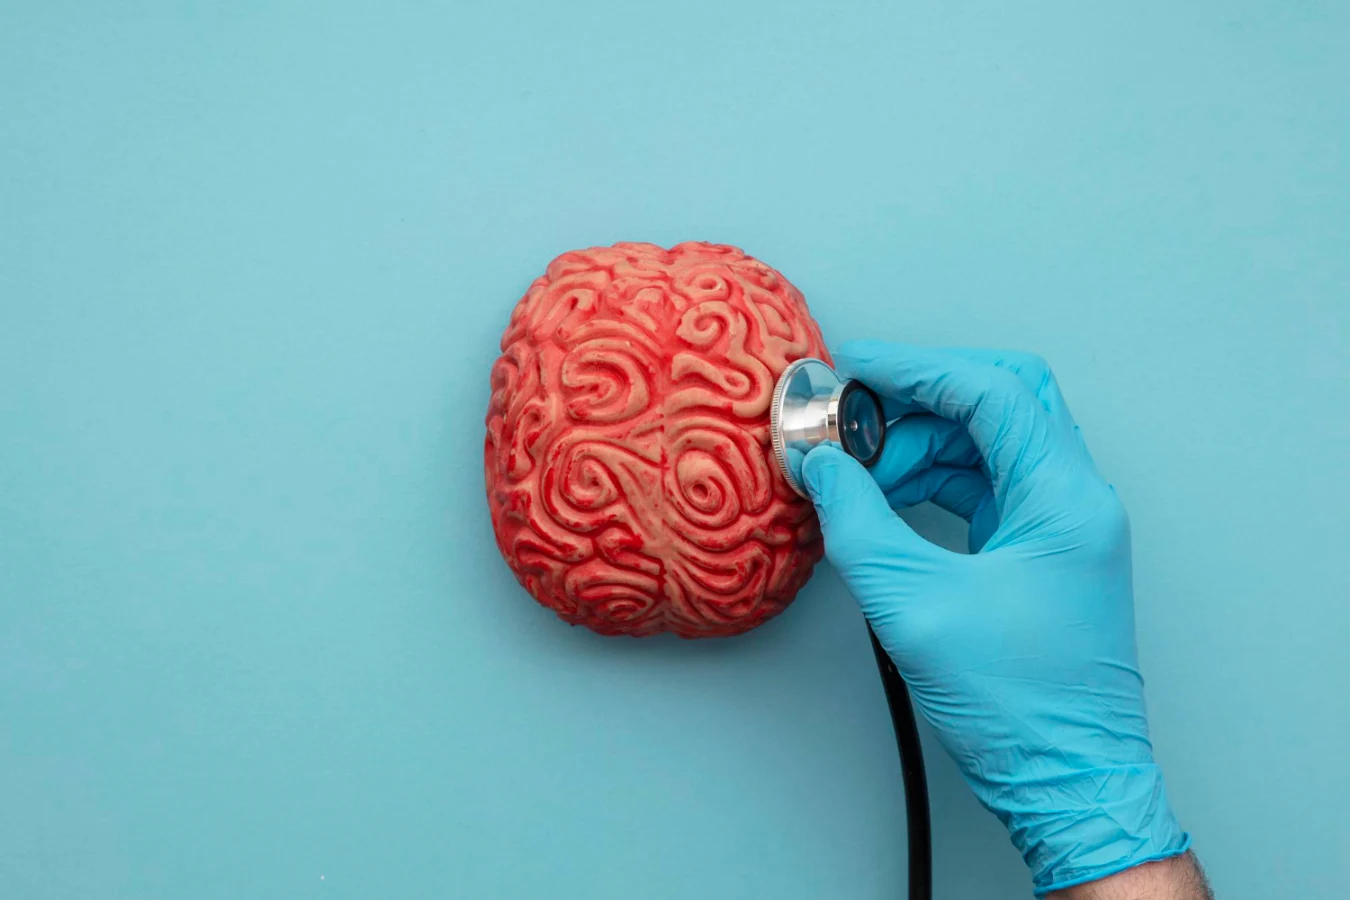 תמונה ראשית של מוח אדם וסטטוסקופ ברקע כחול